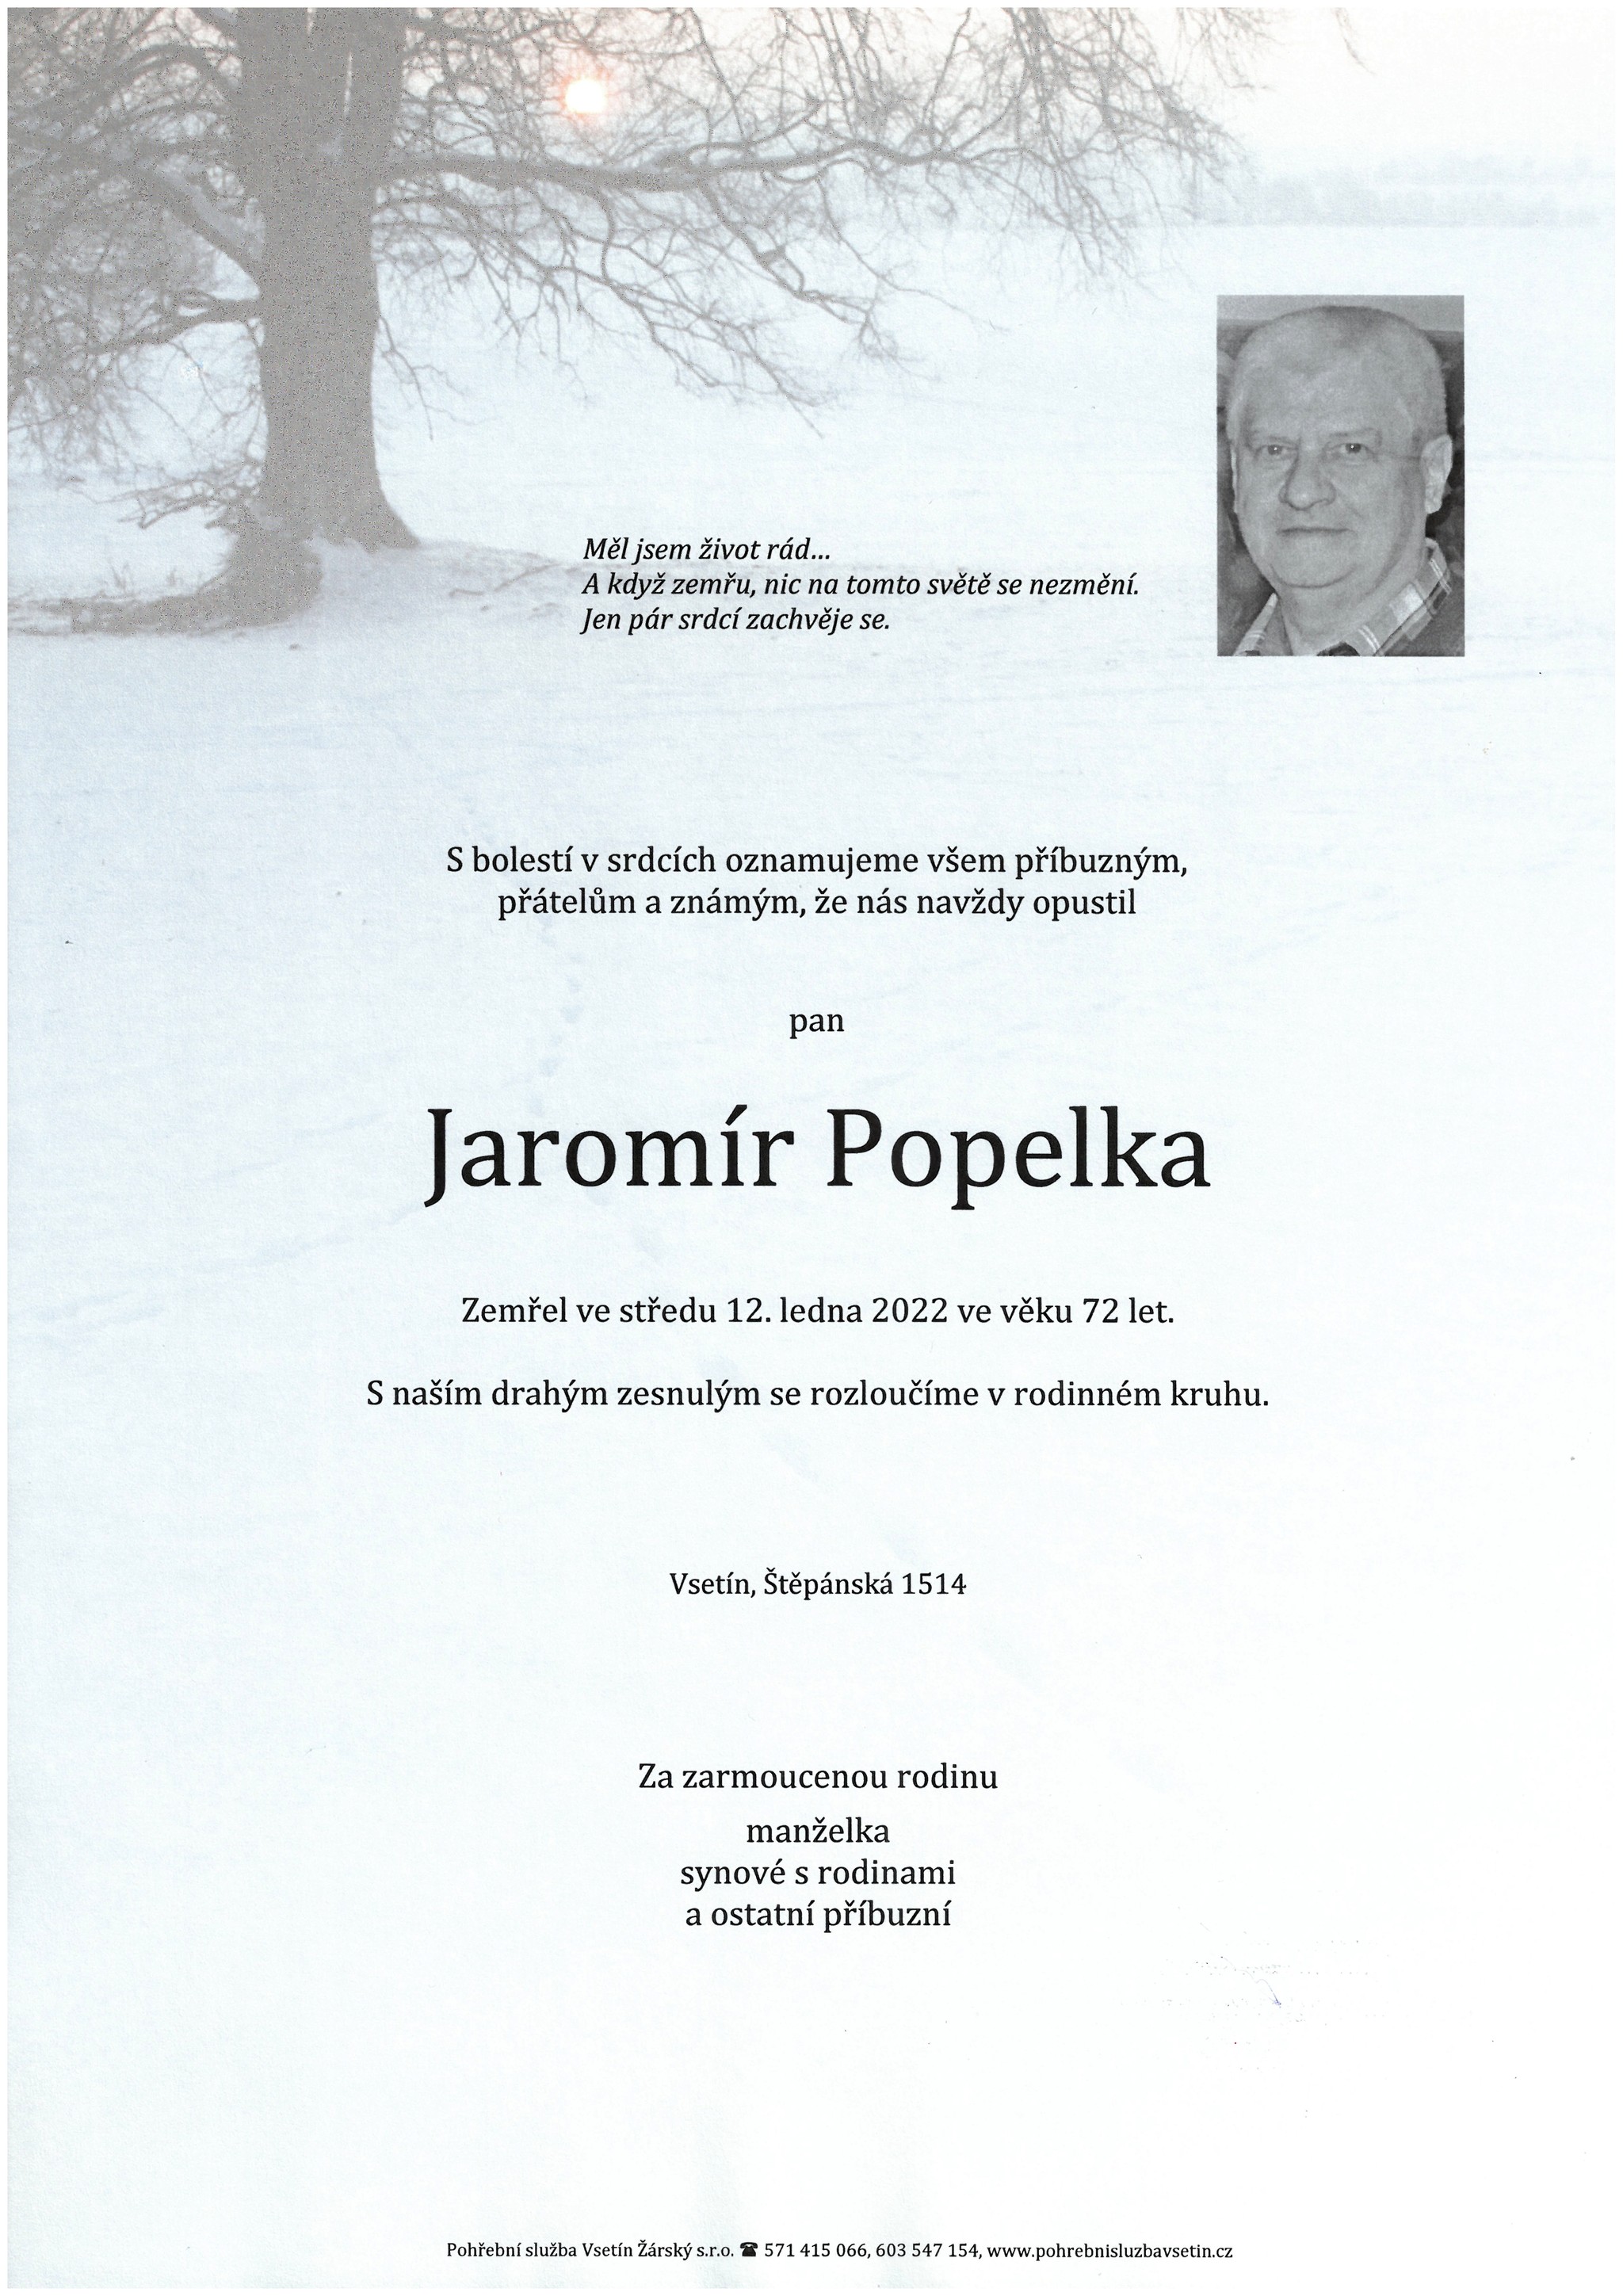 Jaromír Popelka